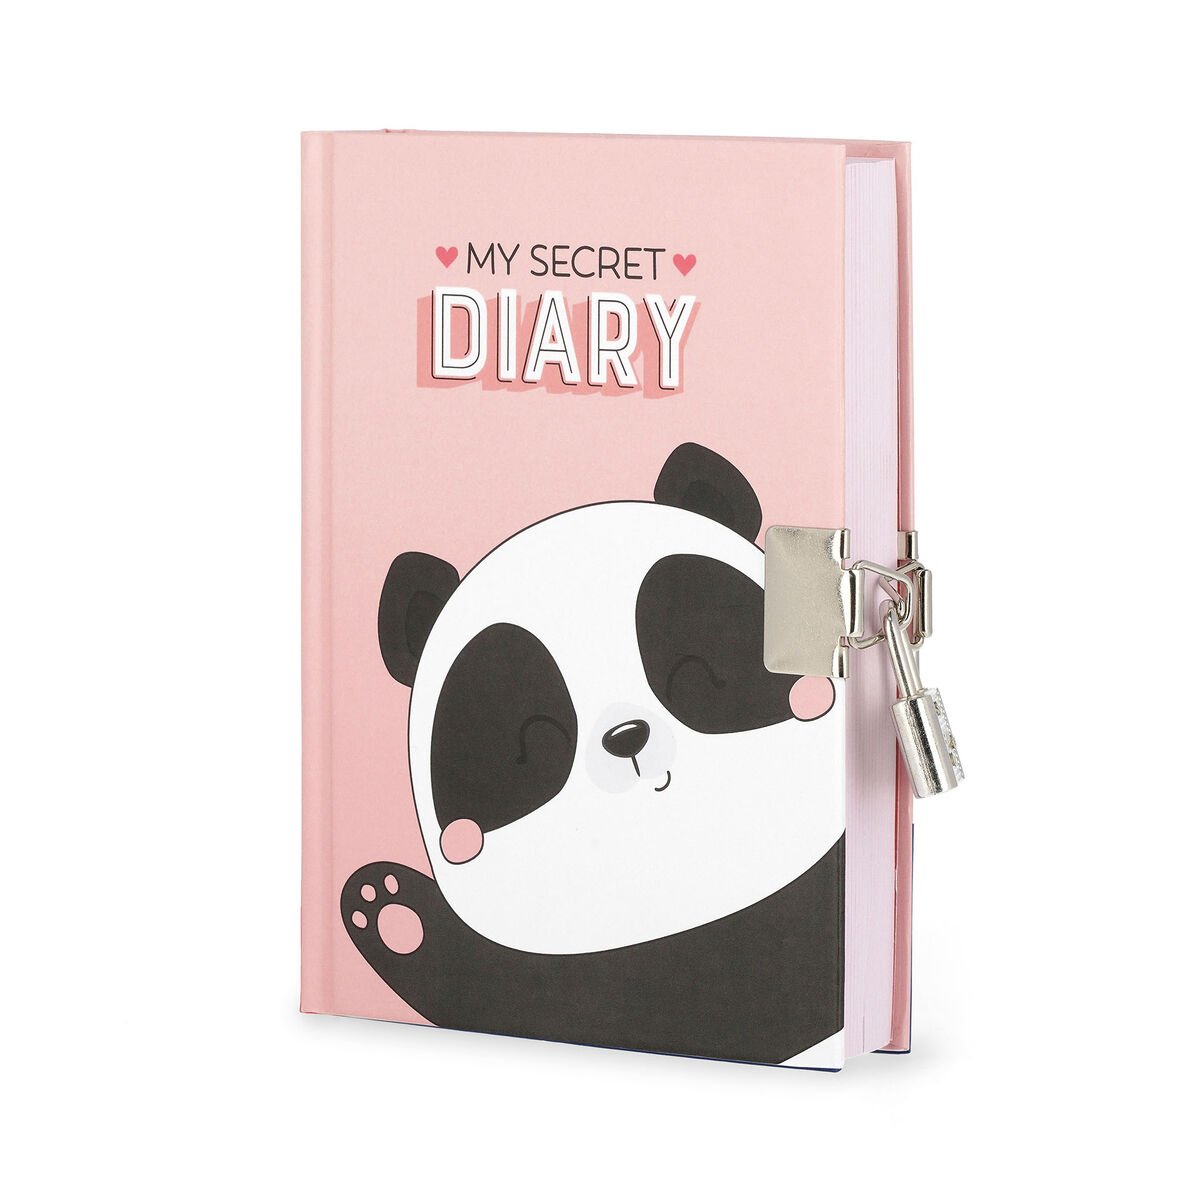 Geheimes Tagebuch mit Vorhängeschloss - My Secret Diary, , zoo